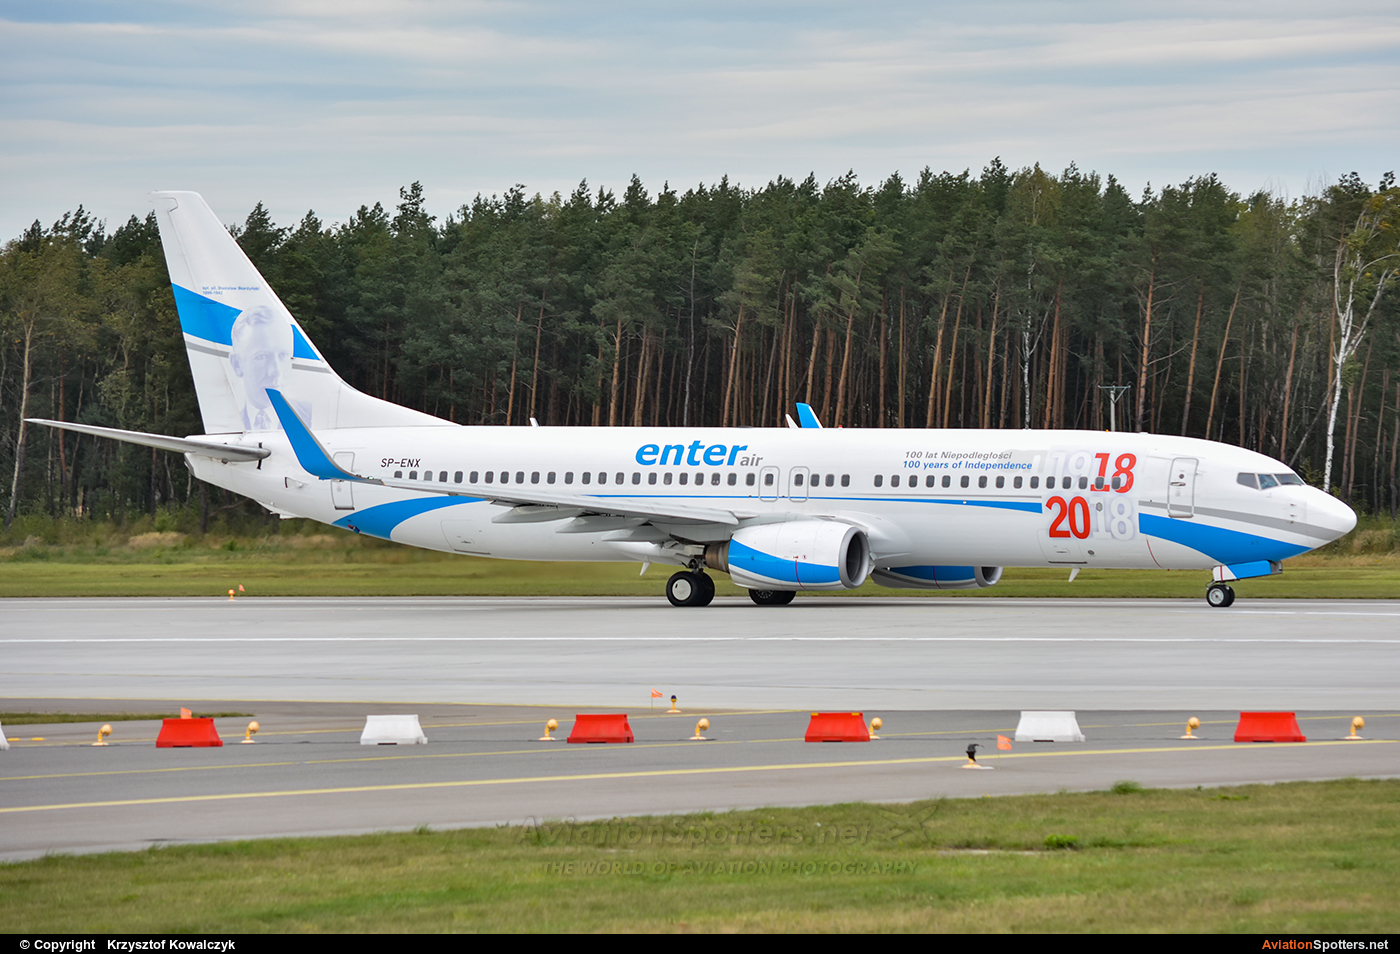 Enter Air  -  737-400  (SP-ENI) By Krzysztof Kowalczyk (Krzysztof Kowalczyk)